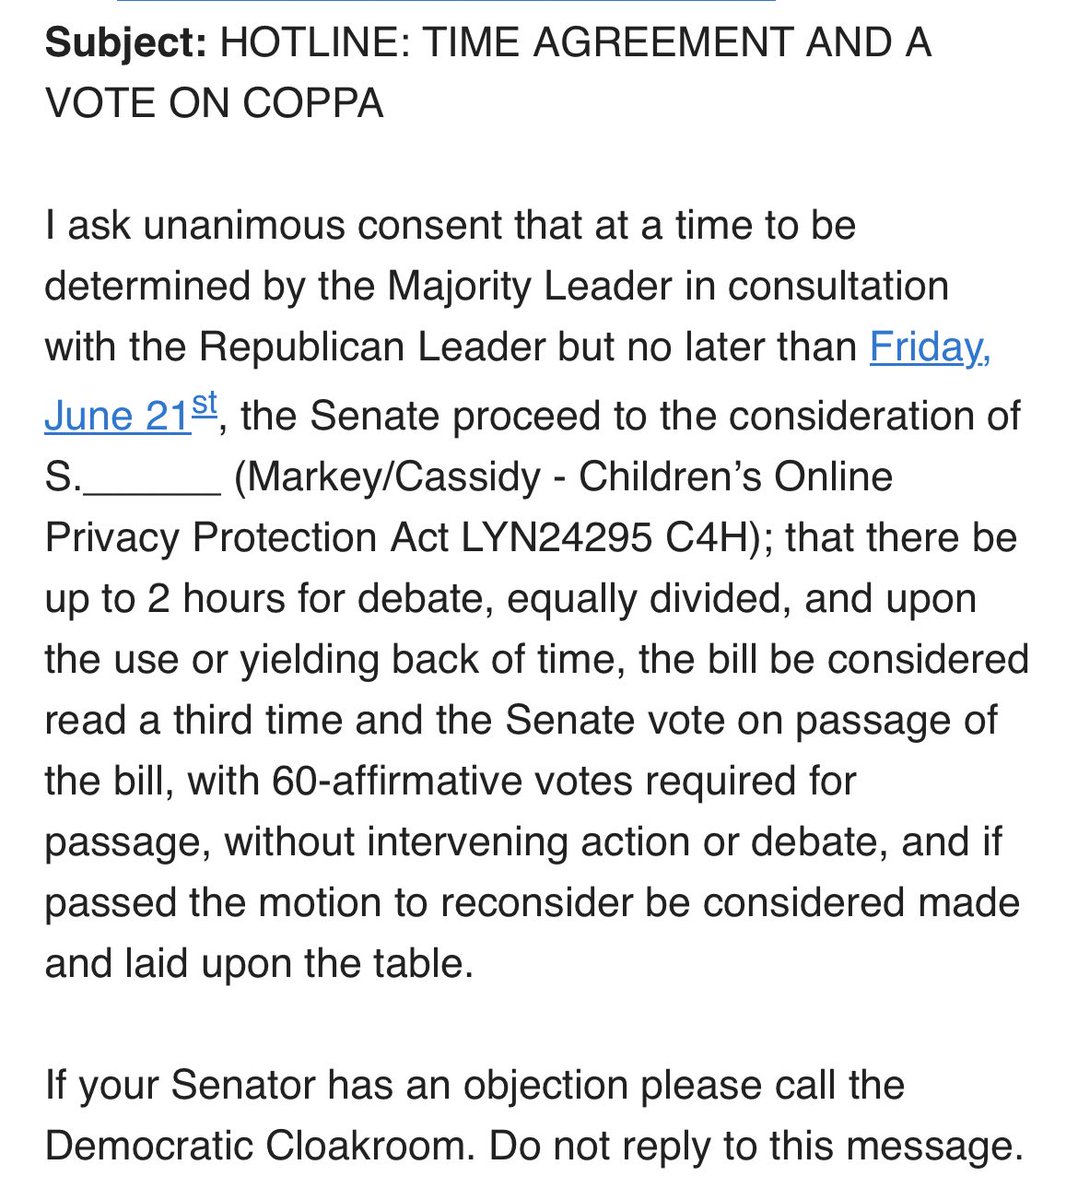 Senate running COPPA hotline